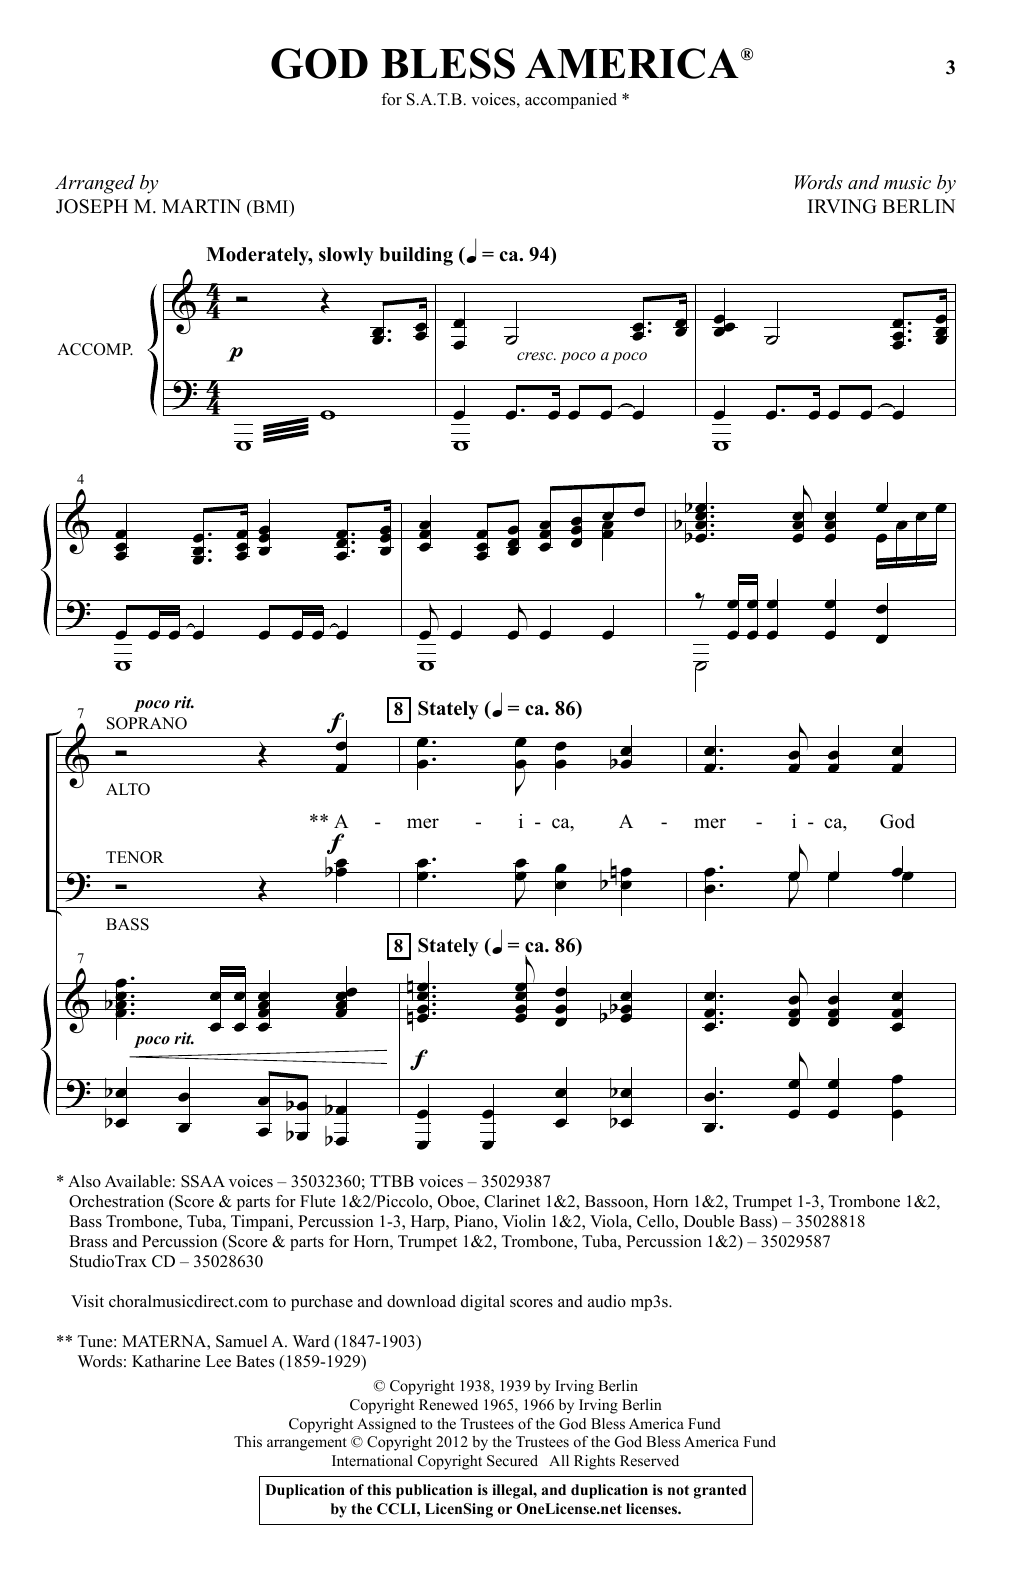 Irving Berlin God Bless America (arr. Joseph M. Martin) Sheet Music Notes & Chords for TTBB - Download or Print PDF